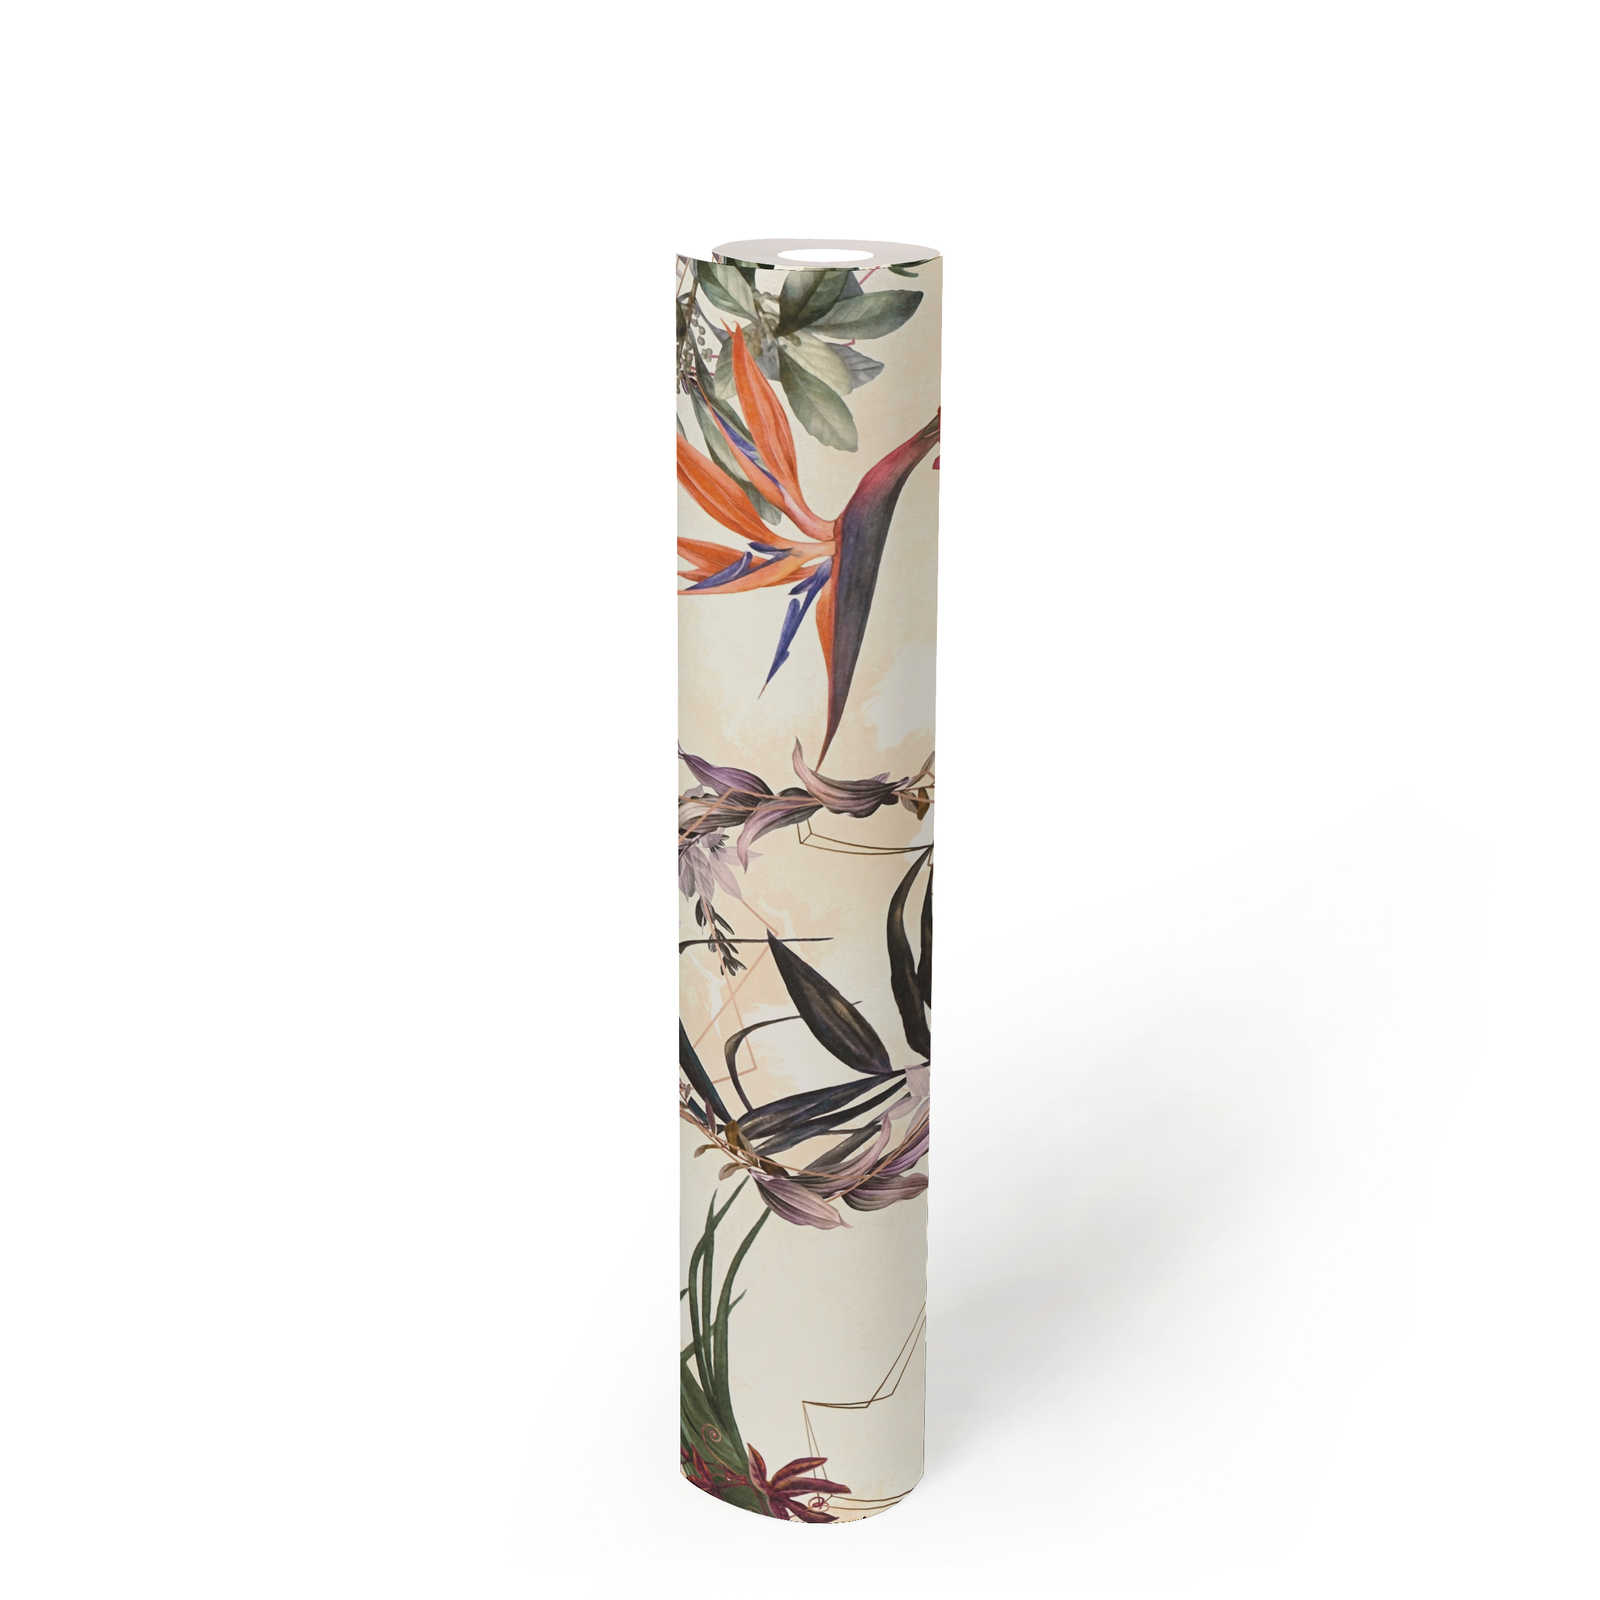             Kunstzinnige bloemen & vogels design behang - beige, groen, roze
        